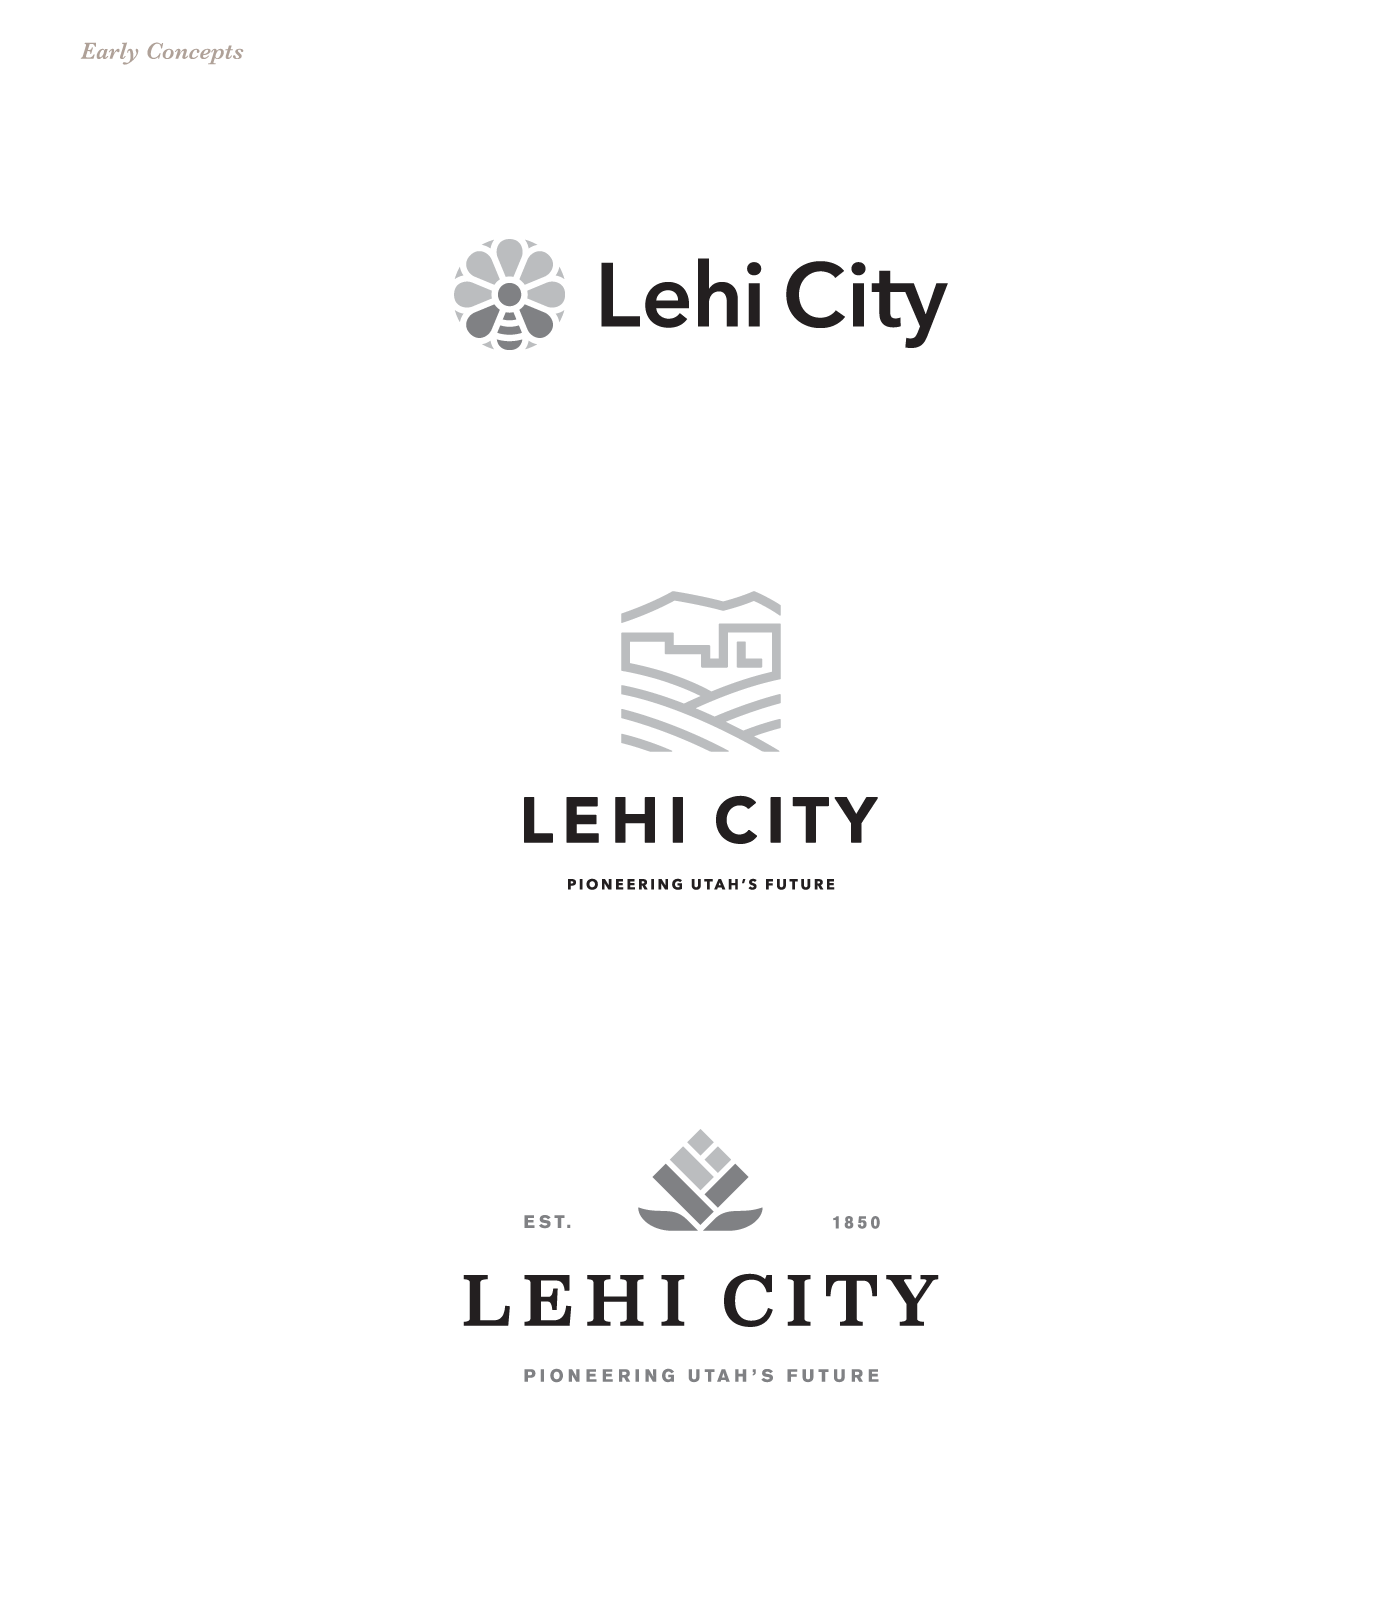 lehi lehi city utah salt lake jibe logo UT city